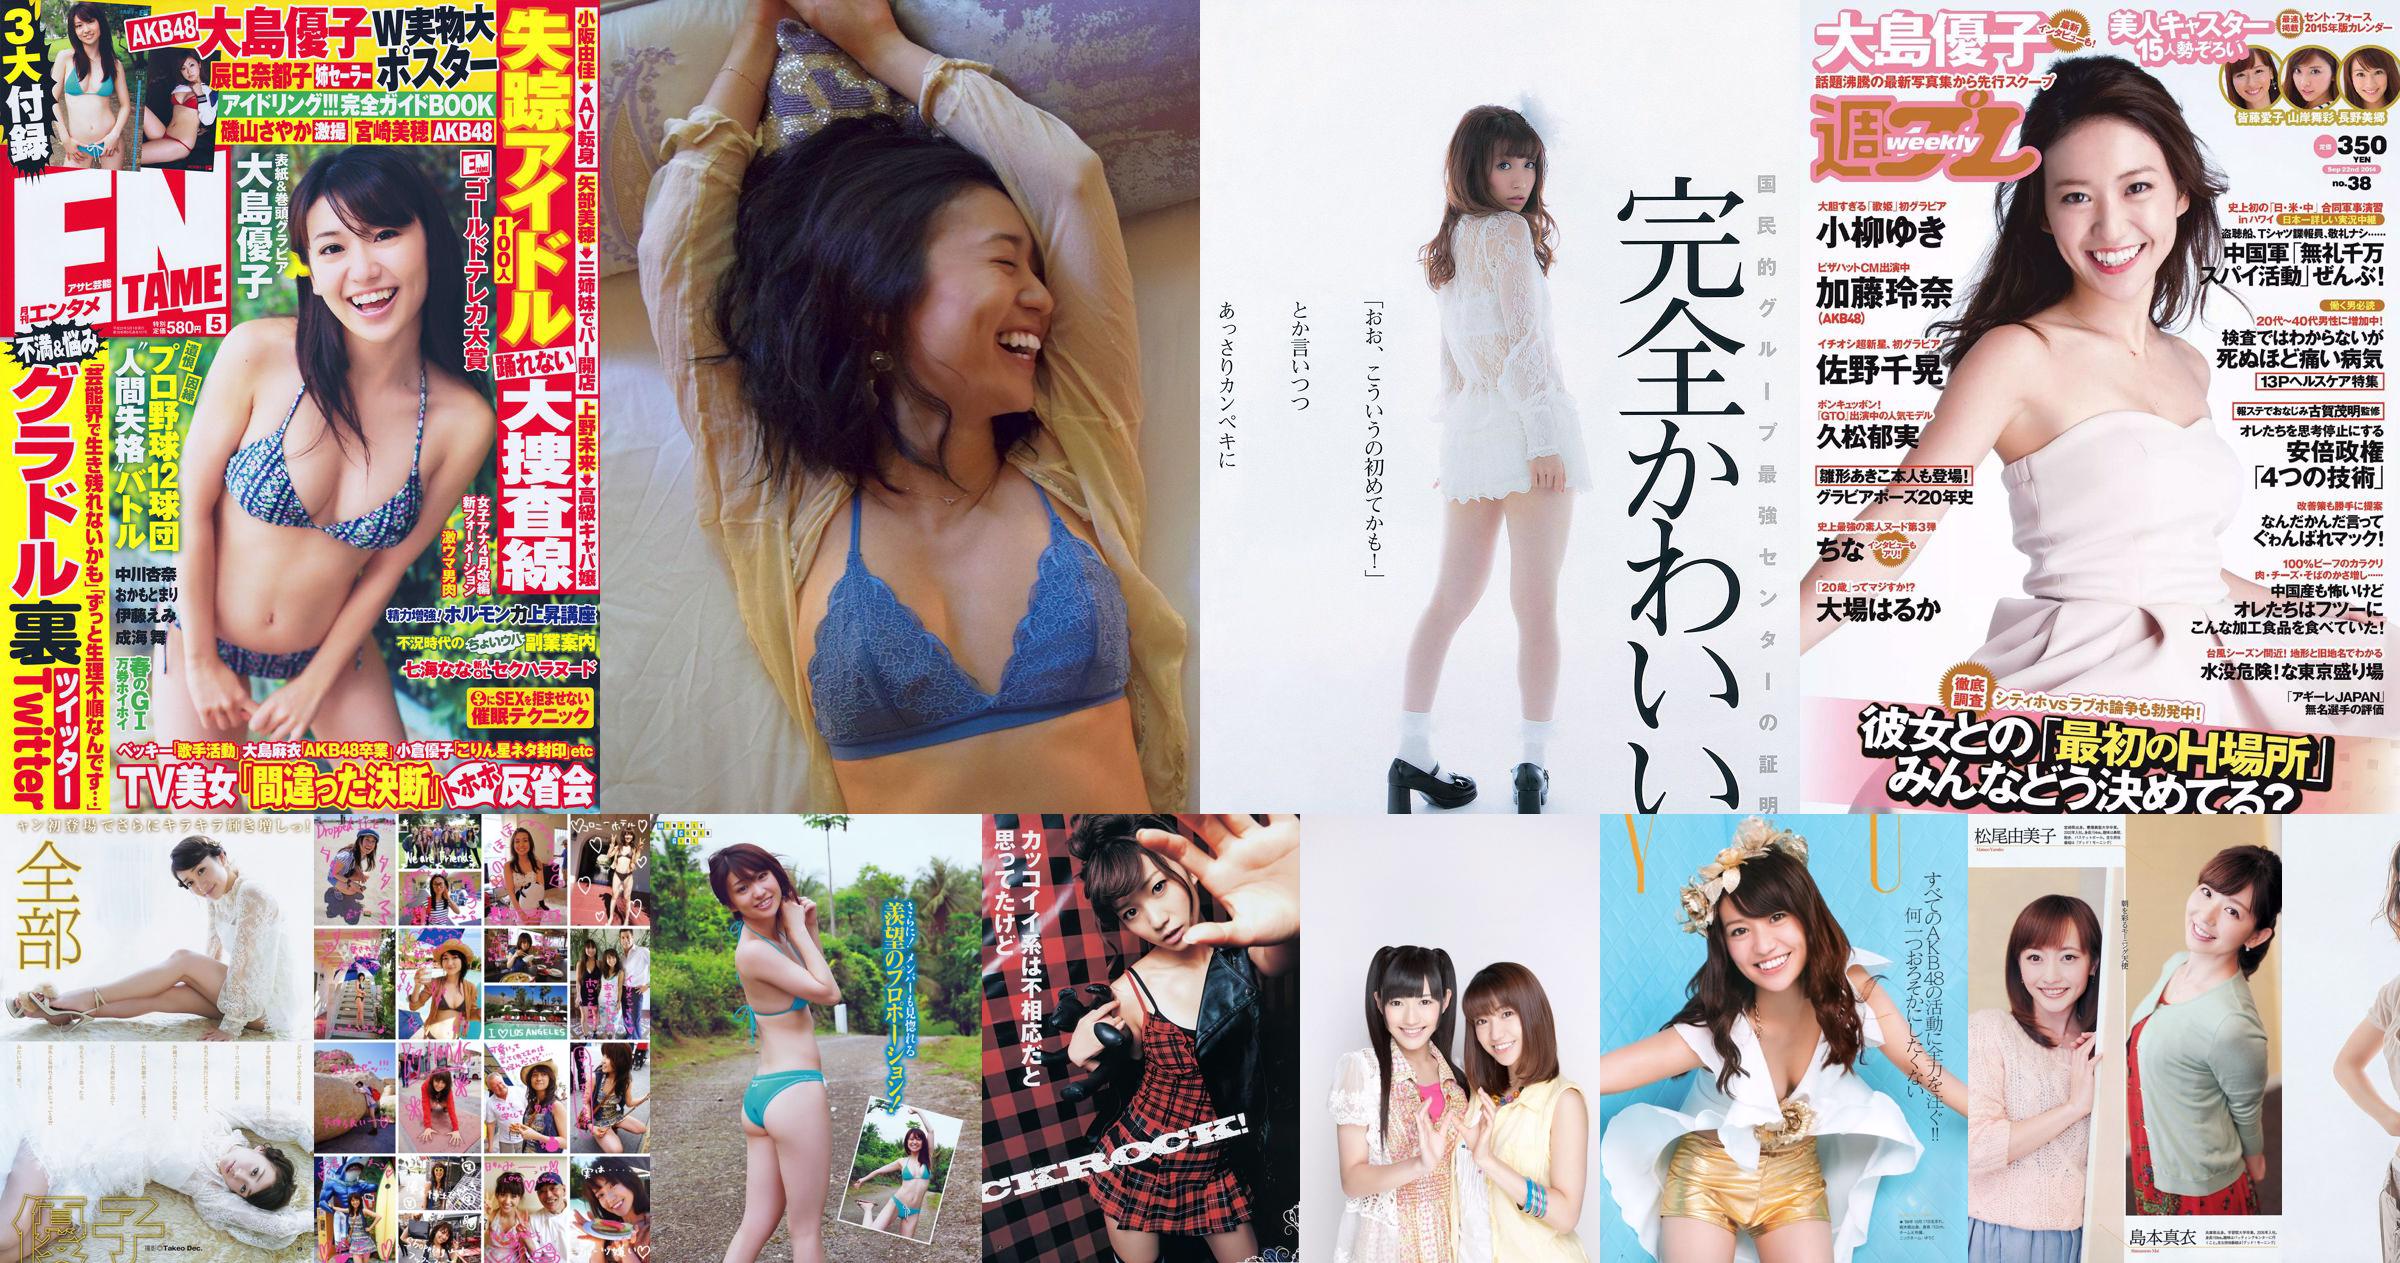 Yuko Oshima Rina Kawaei Natsuna Mariko Seyama Mikie Hara Rara Anzai [Weekly Playboy] 2014 No.03-04 Photograph No.e21de6 Page 3